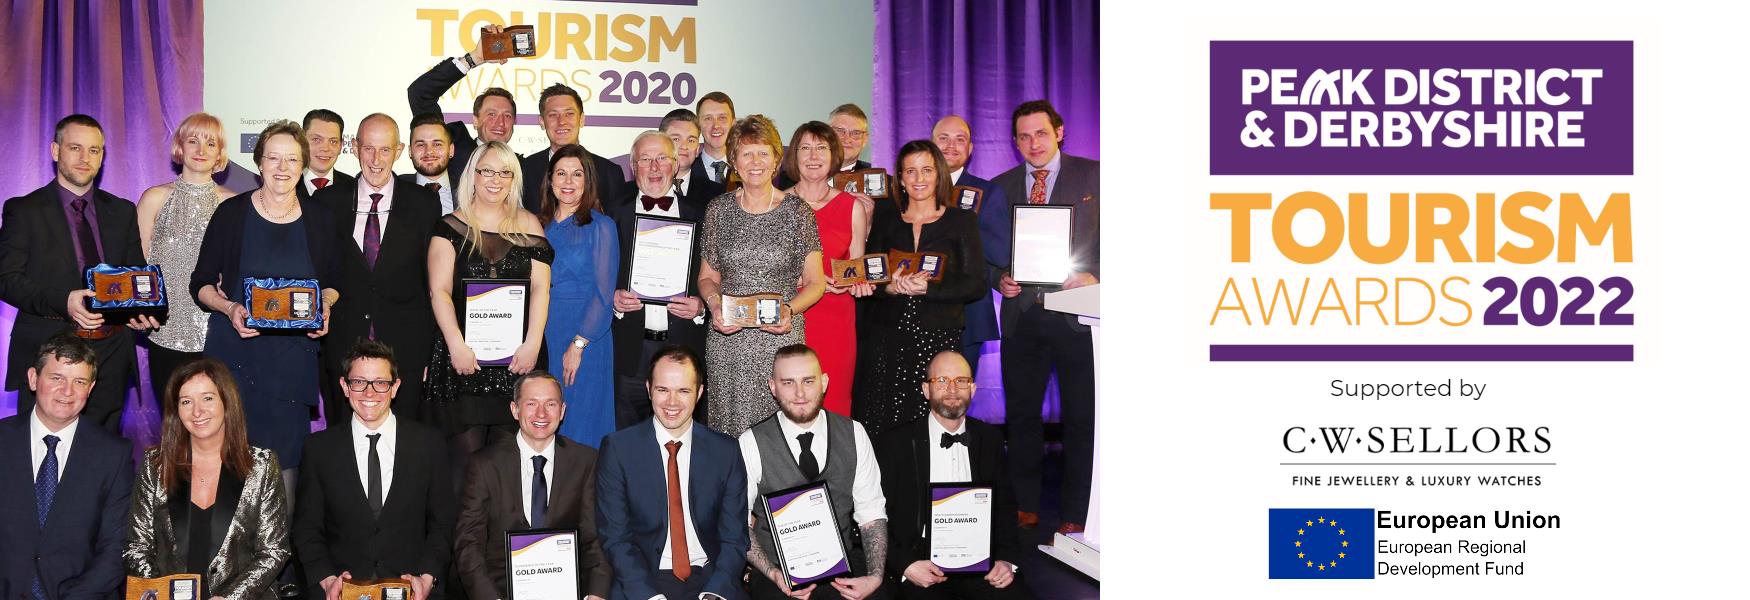 derbyshire tourism awards